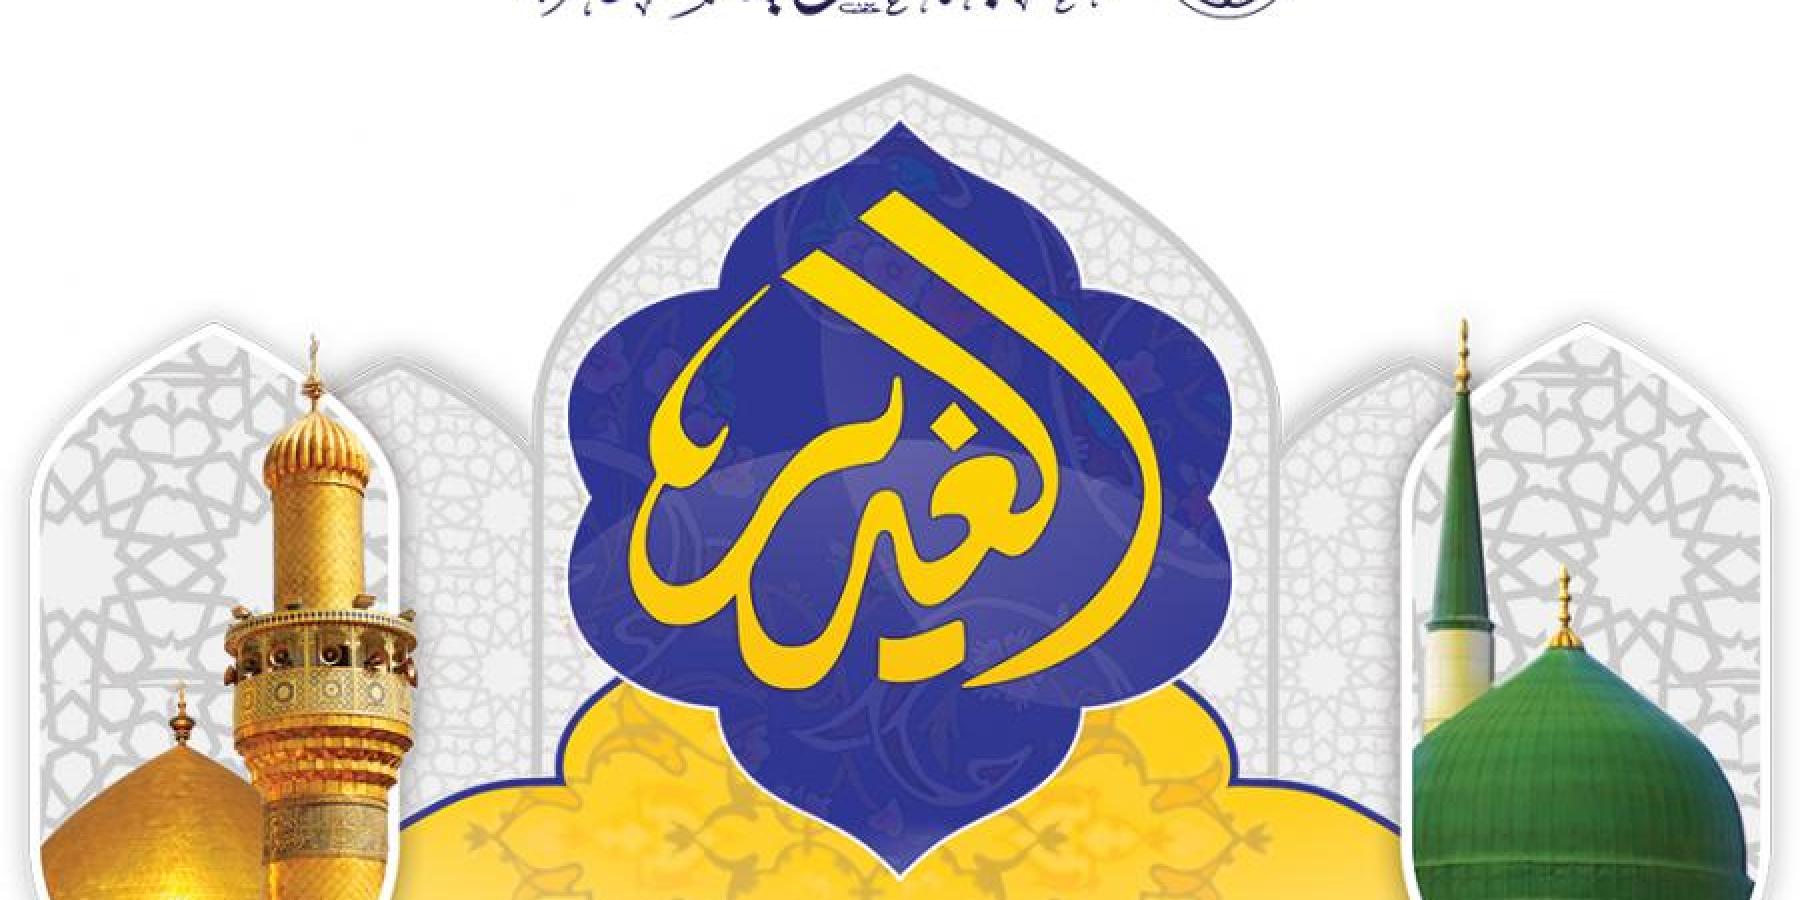  اللجنة العليا لمهرجان الغدير الأغر تعلن عن فعاليات مهرجانها السنوي السابع 